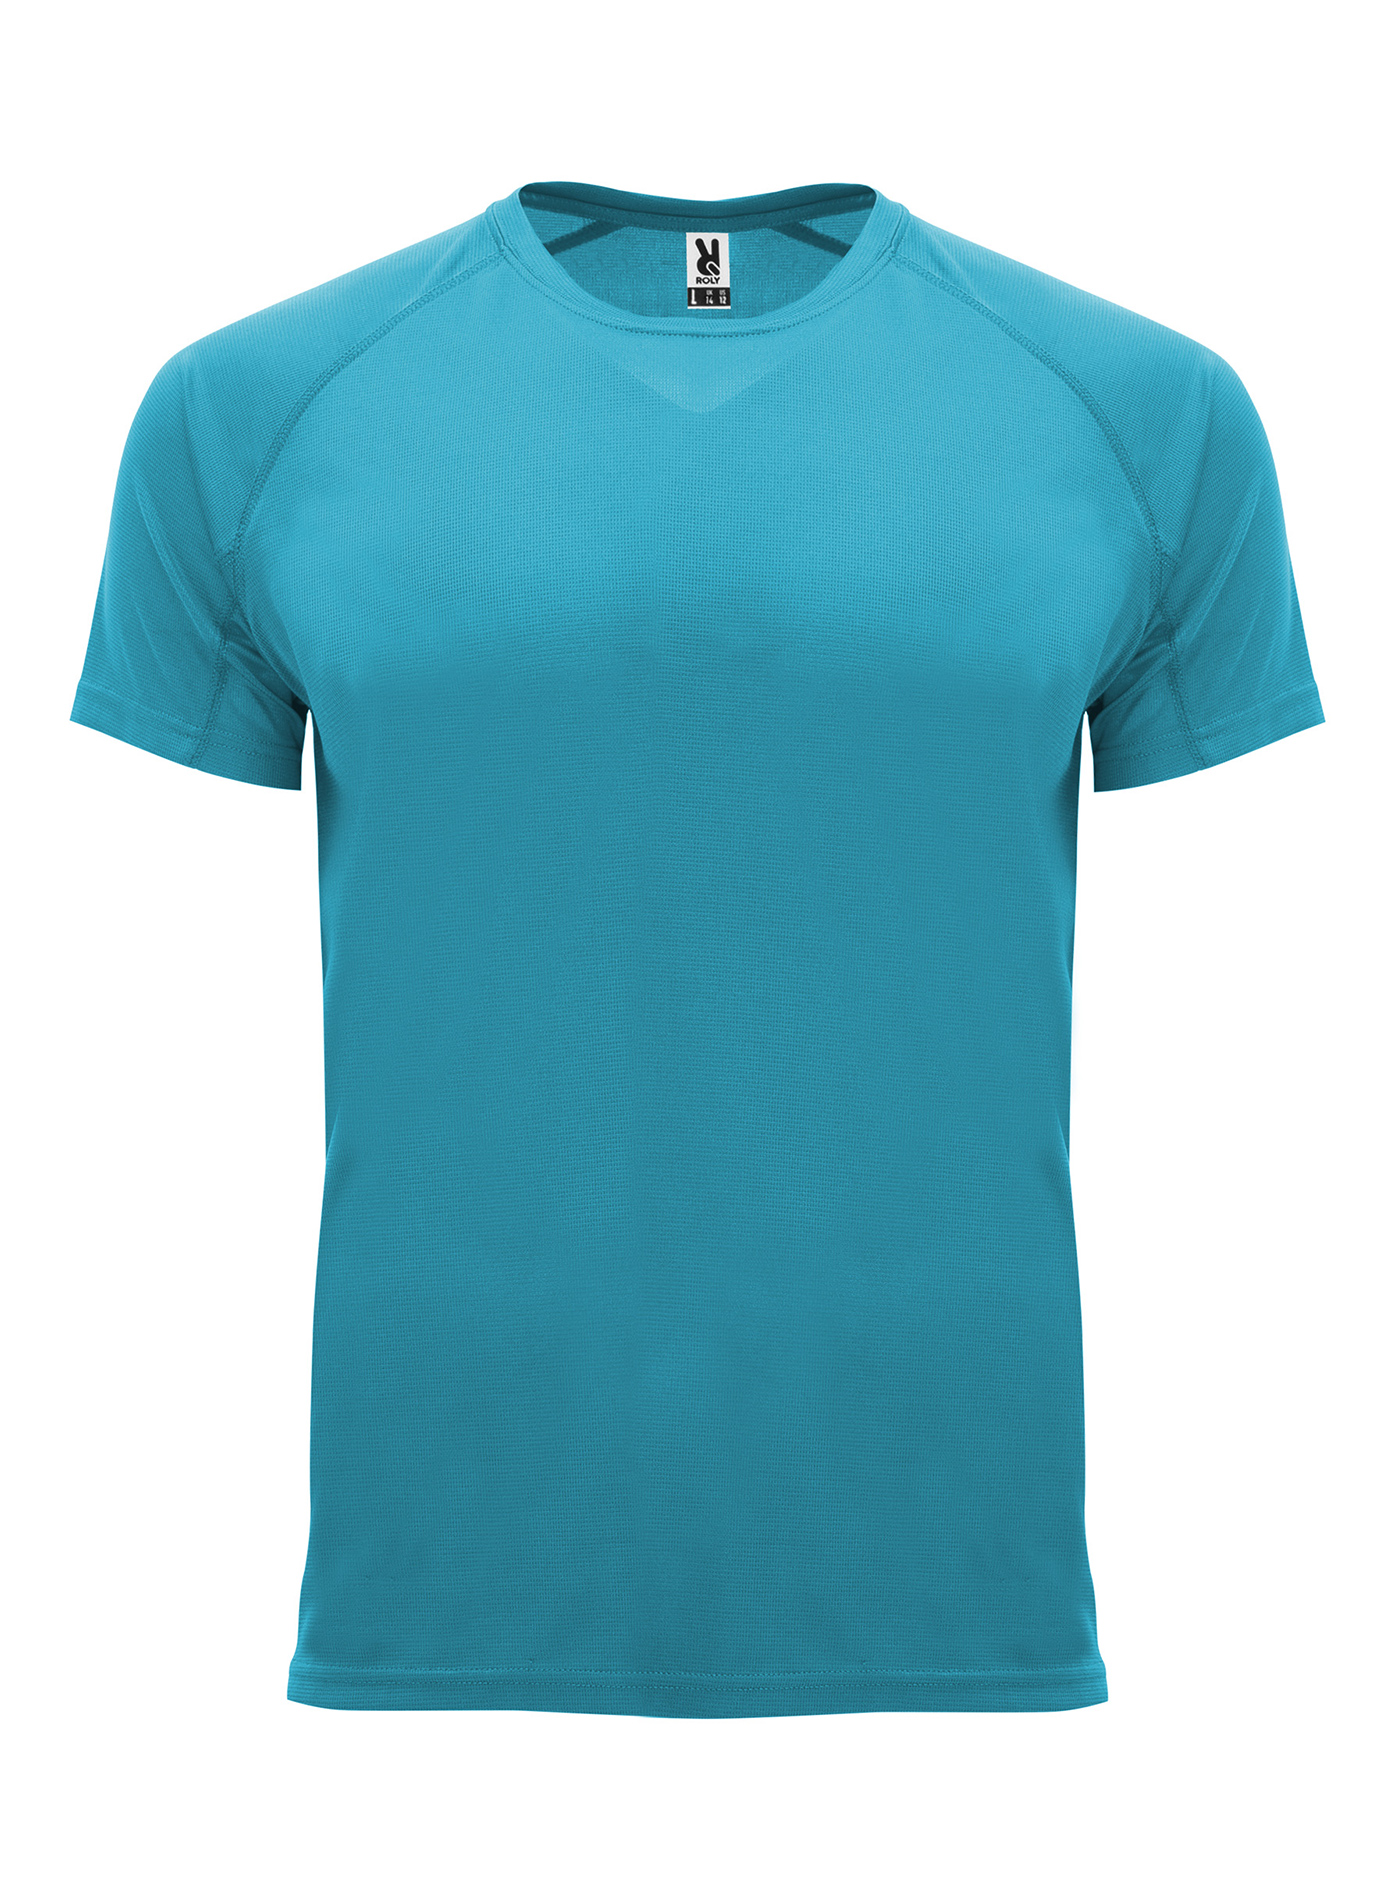 Pánské sportovní tričko Roly Bahrain - Tyrkysově modrá XL